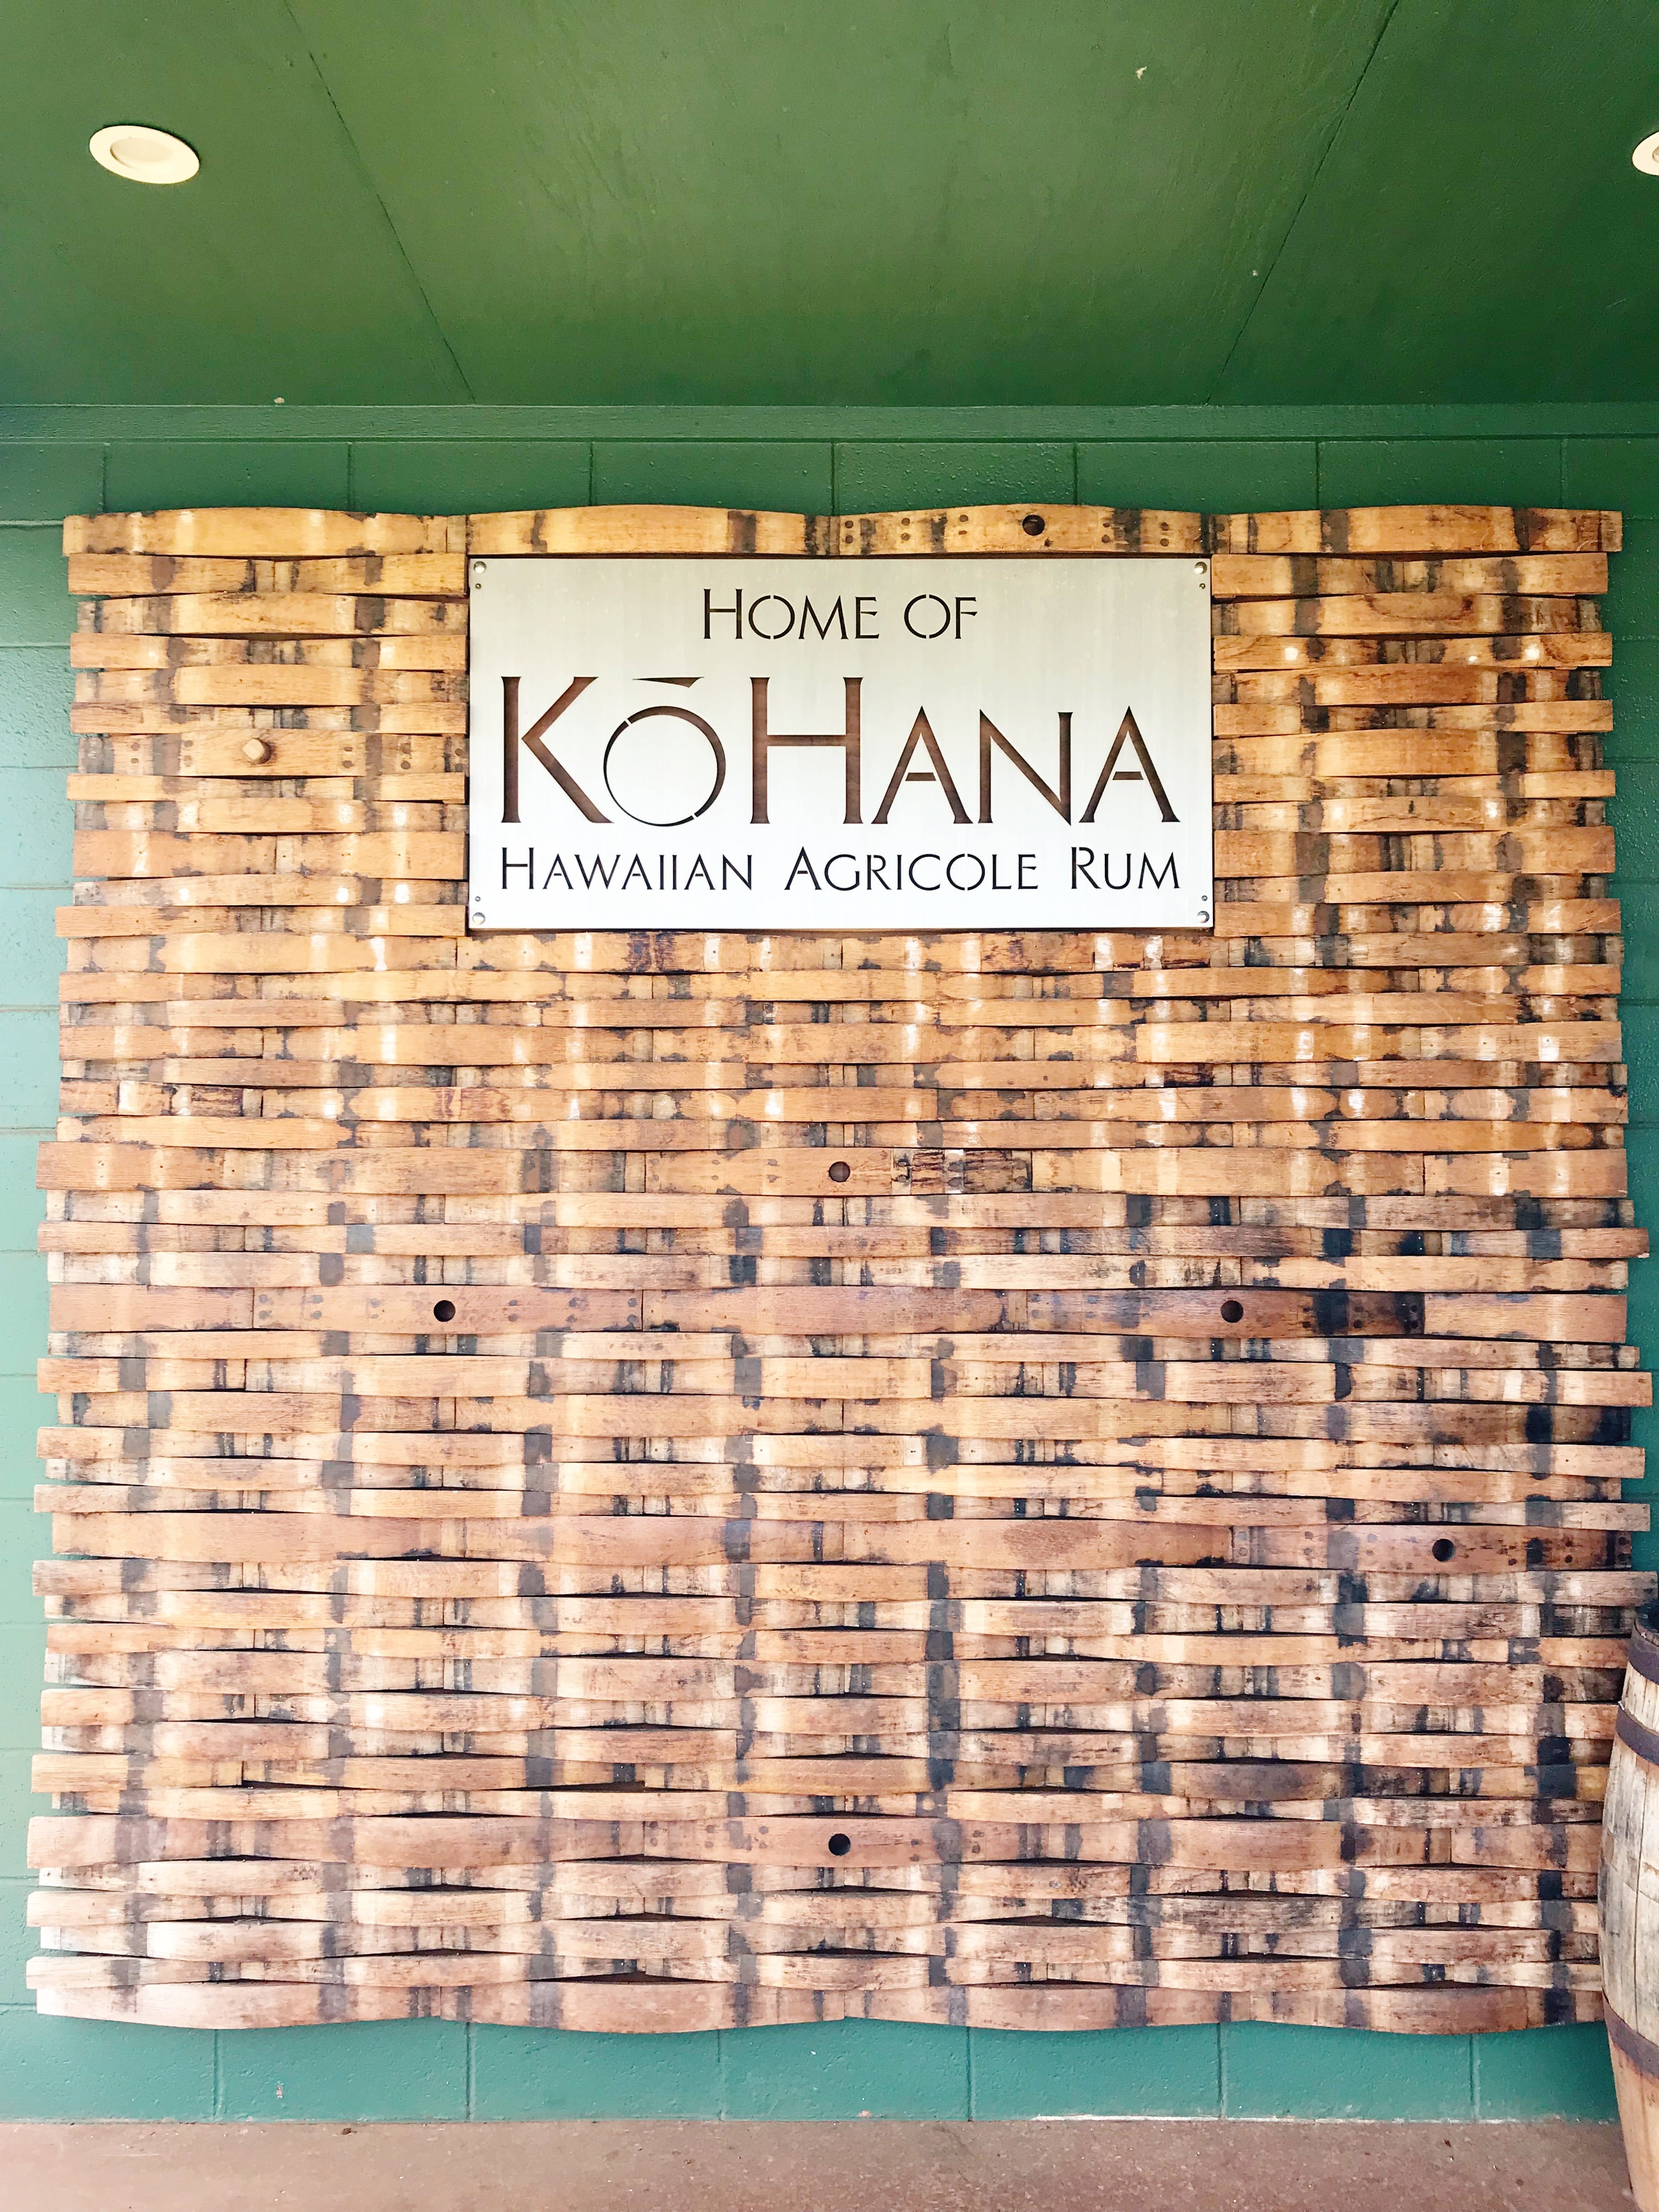 Touring KōHana Rum Distillery + Tasting Room - Oahu Hawaii - Hawaii Vacation - What to do on Oahu - Day trip from Honolulu - #hawaii #oahu #KoHana #Manulele